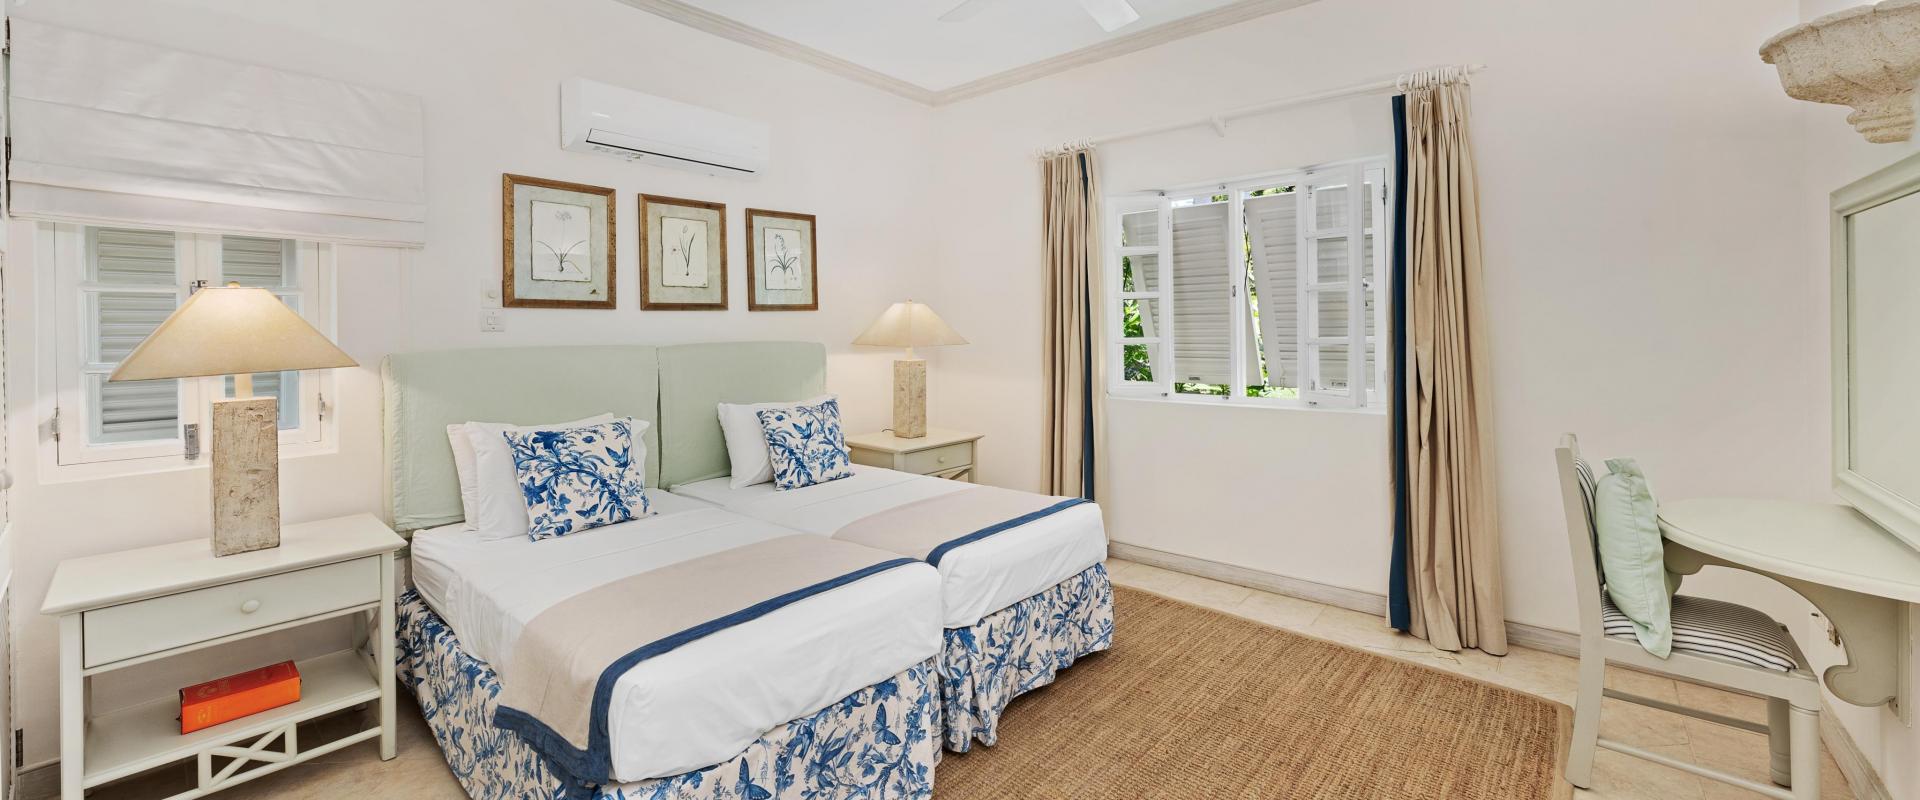 Villa Rosa Holiday Rental Villa In Royal Westmoreland Barbados Bedroom 3 With Desk and Dressing Mirror